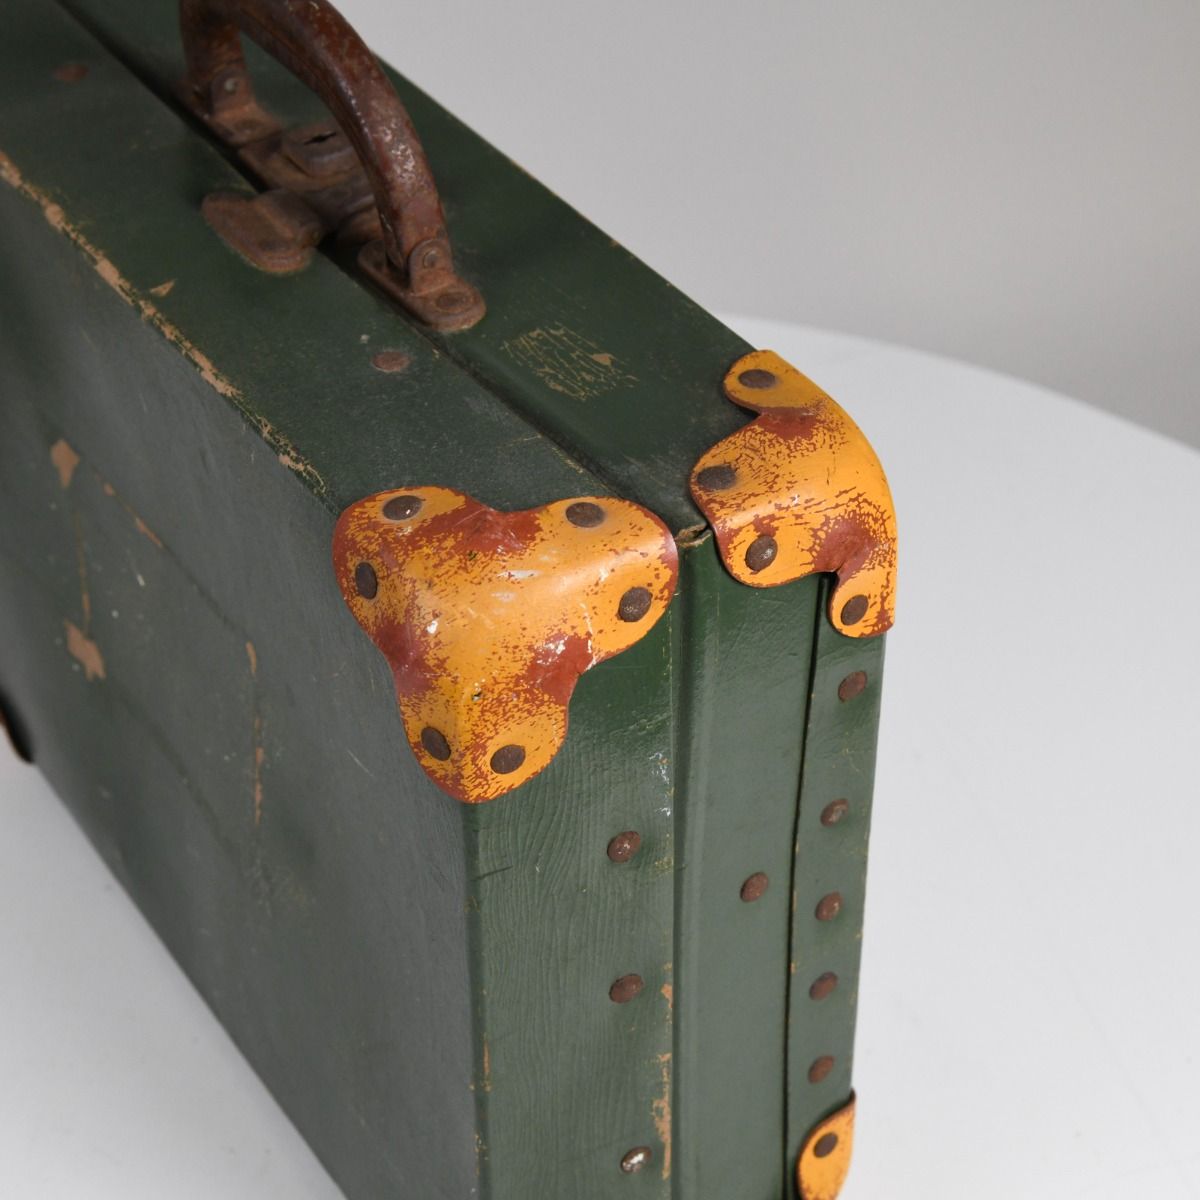 Vintage Mid Century Green Wooden Briefcase